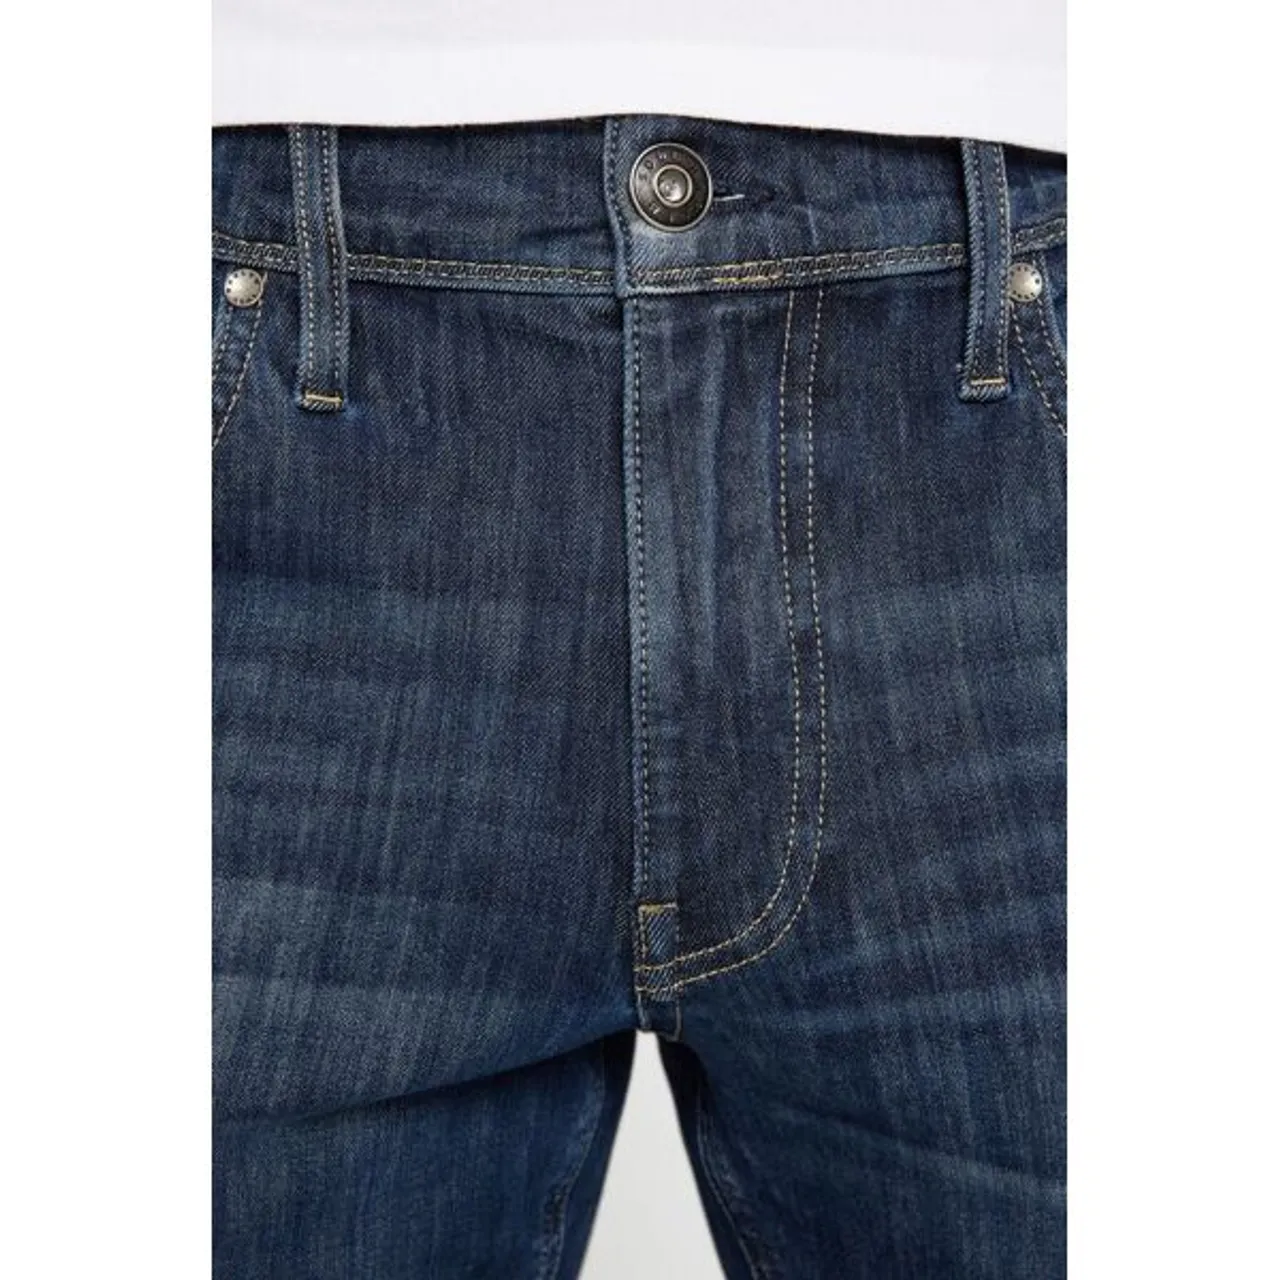 Slim-fit-Jeans HARLEM SOUL "CLE-VE" Gr. 29, Länge 32, blau Herren Jeans 5-Pocket-Jeans